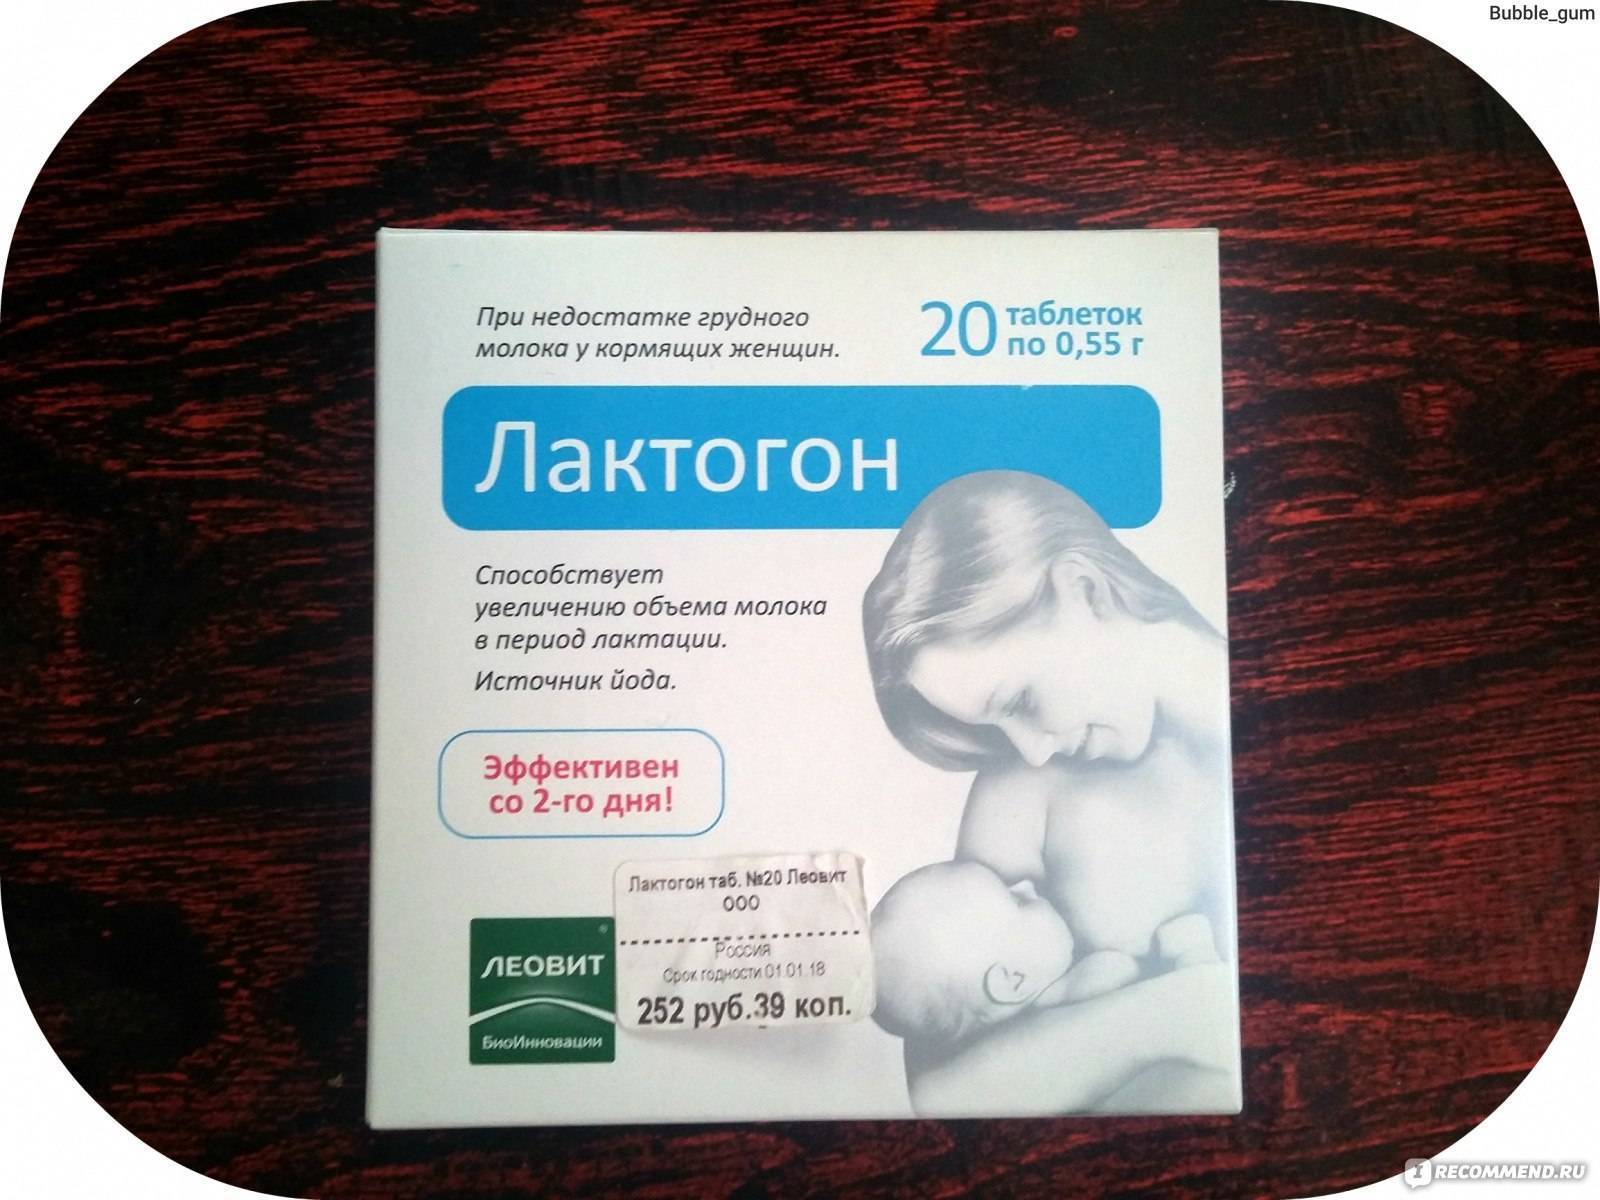 Как увеличить лактацию молока при грудном вскармливании, если ребенку не хватает - medside.ru